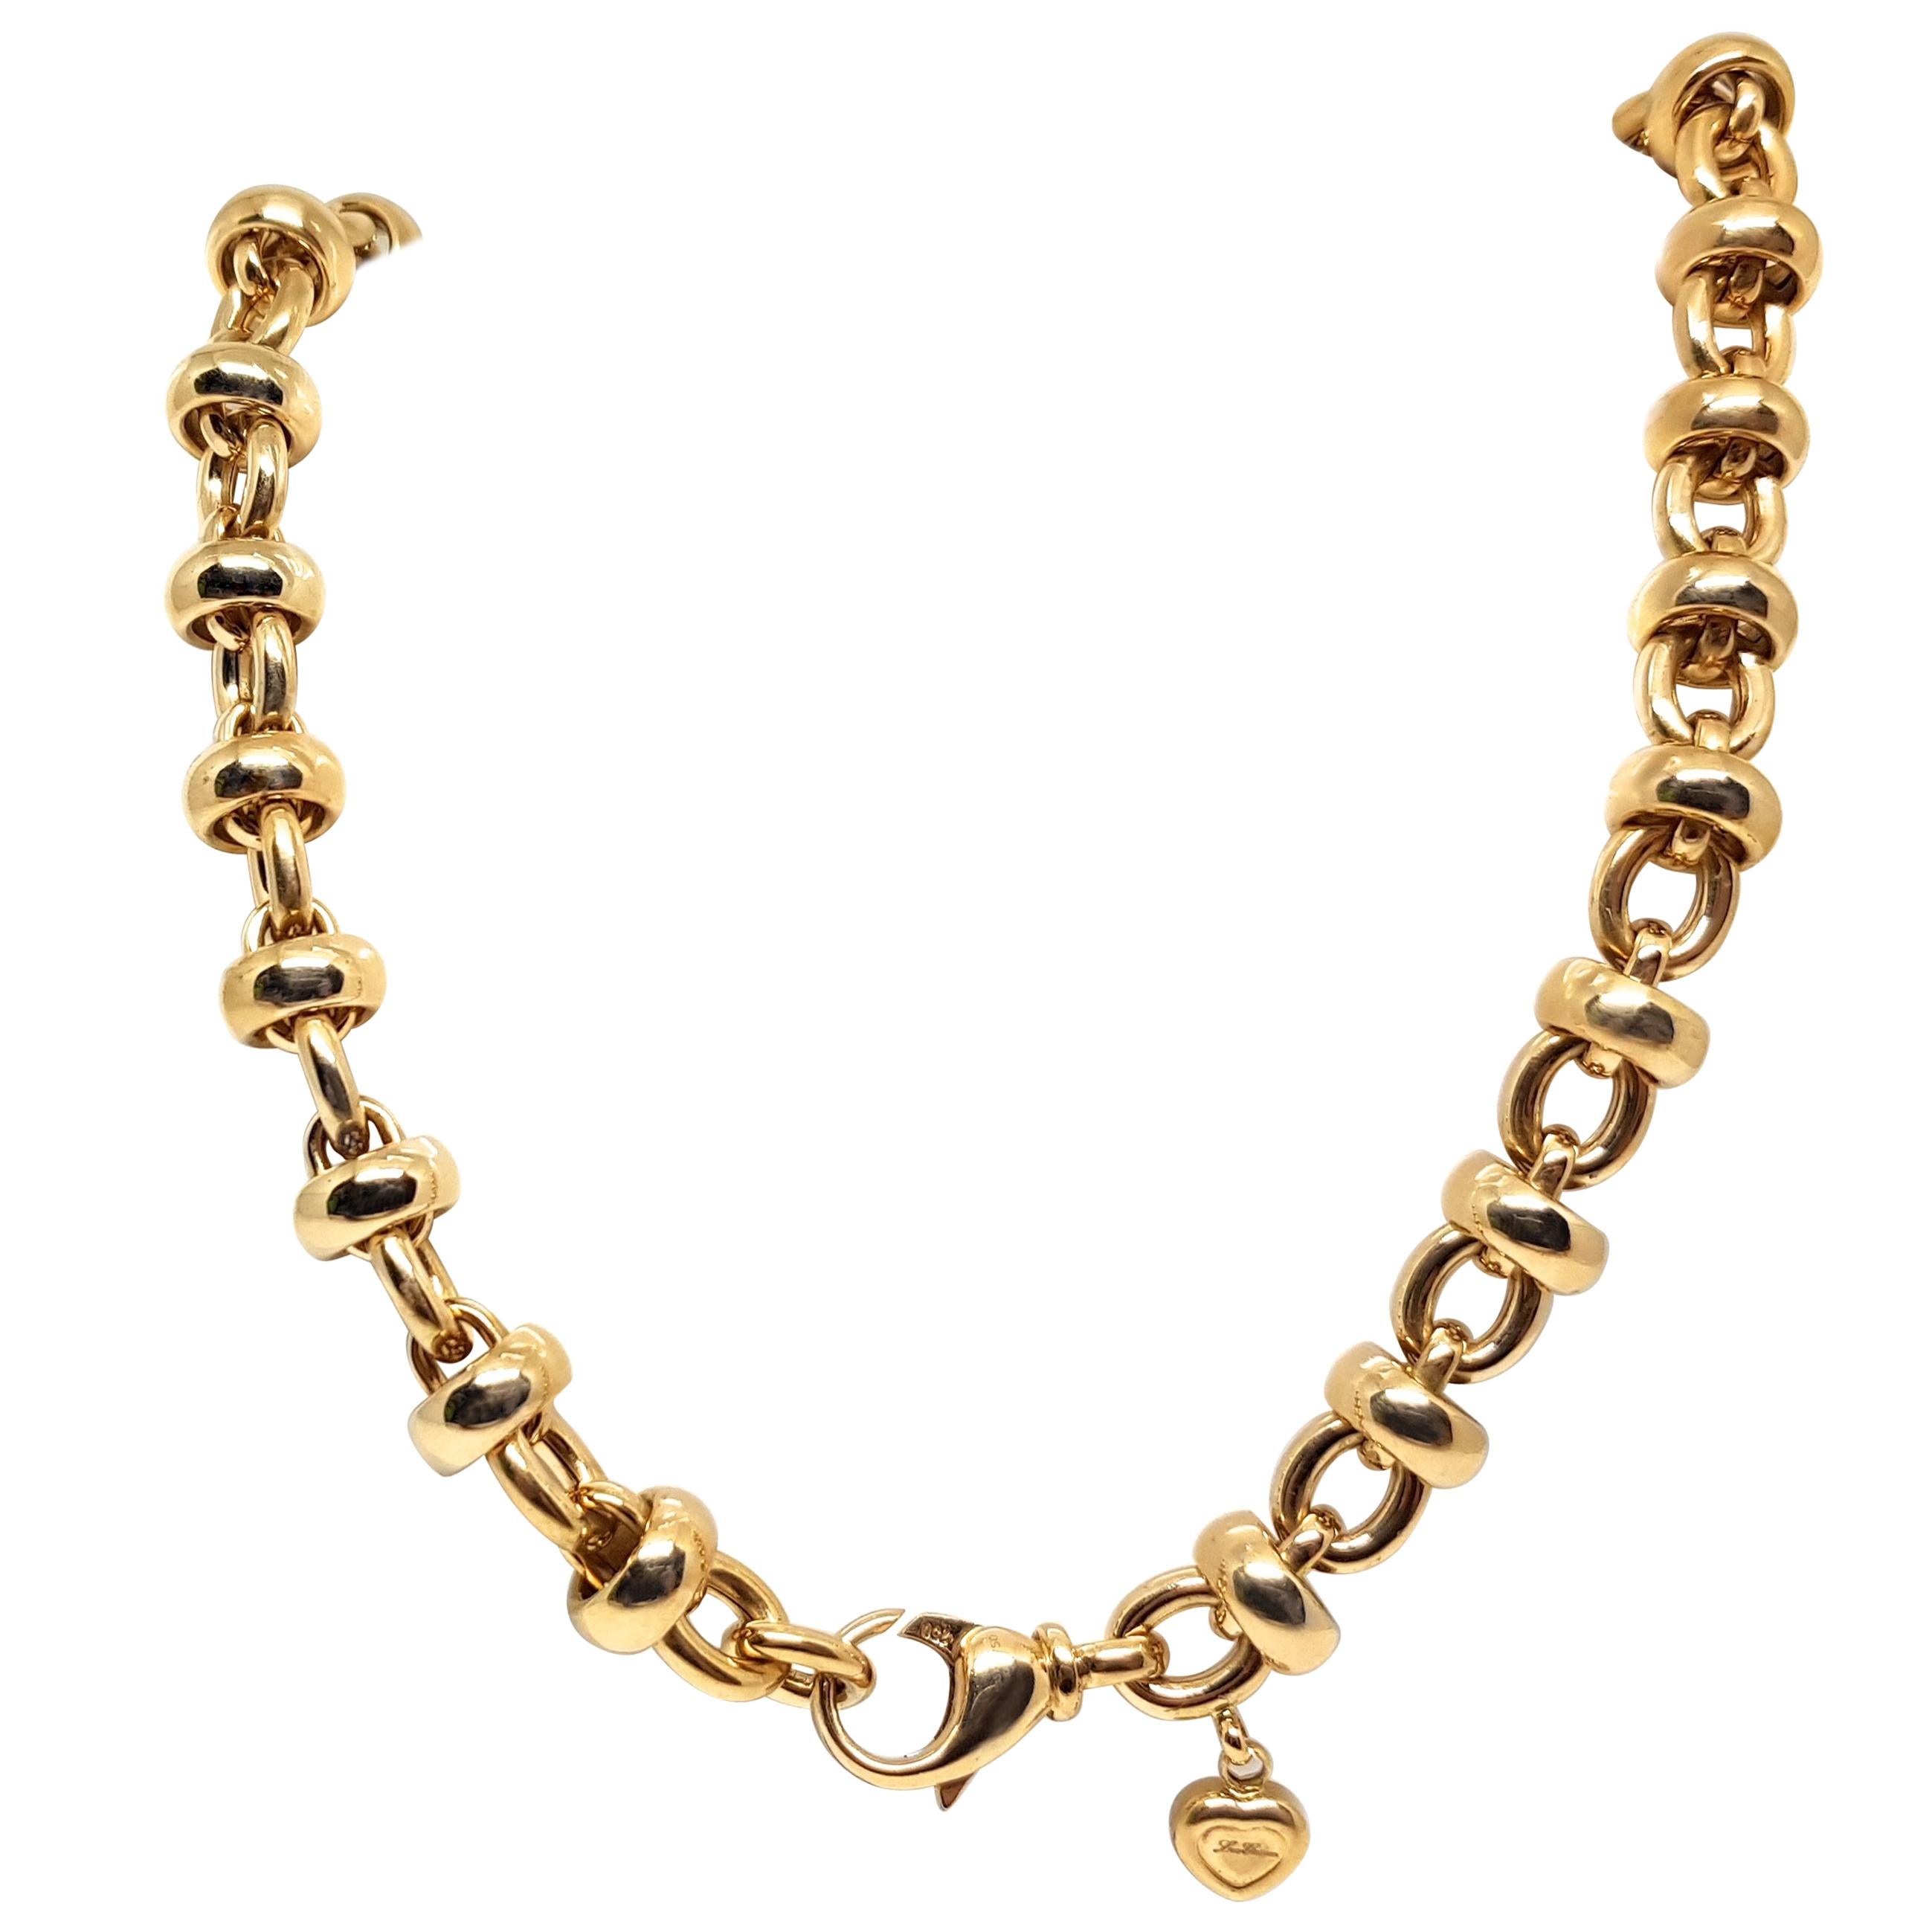 Chopard Les Chaines 18 Karat Yellow Gold Link Necklace Bracelet Set Original Box